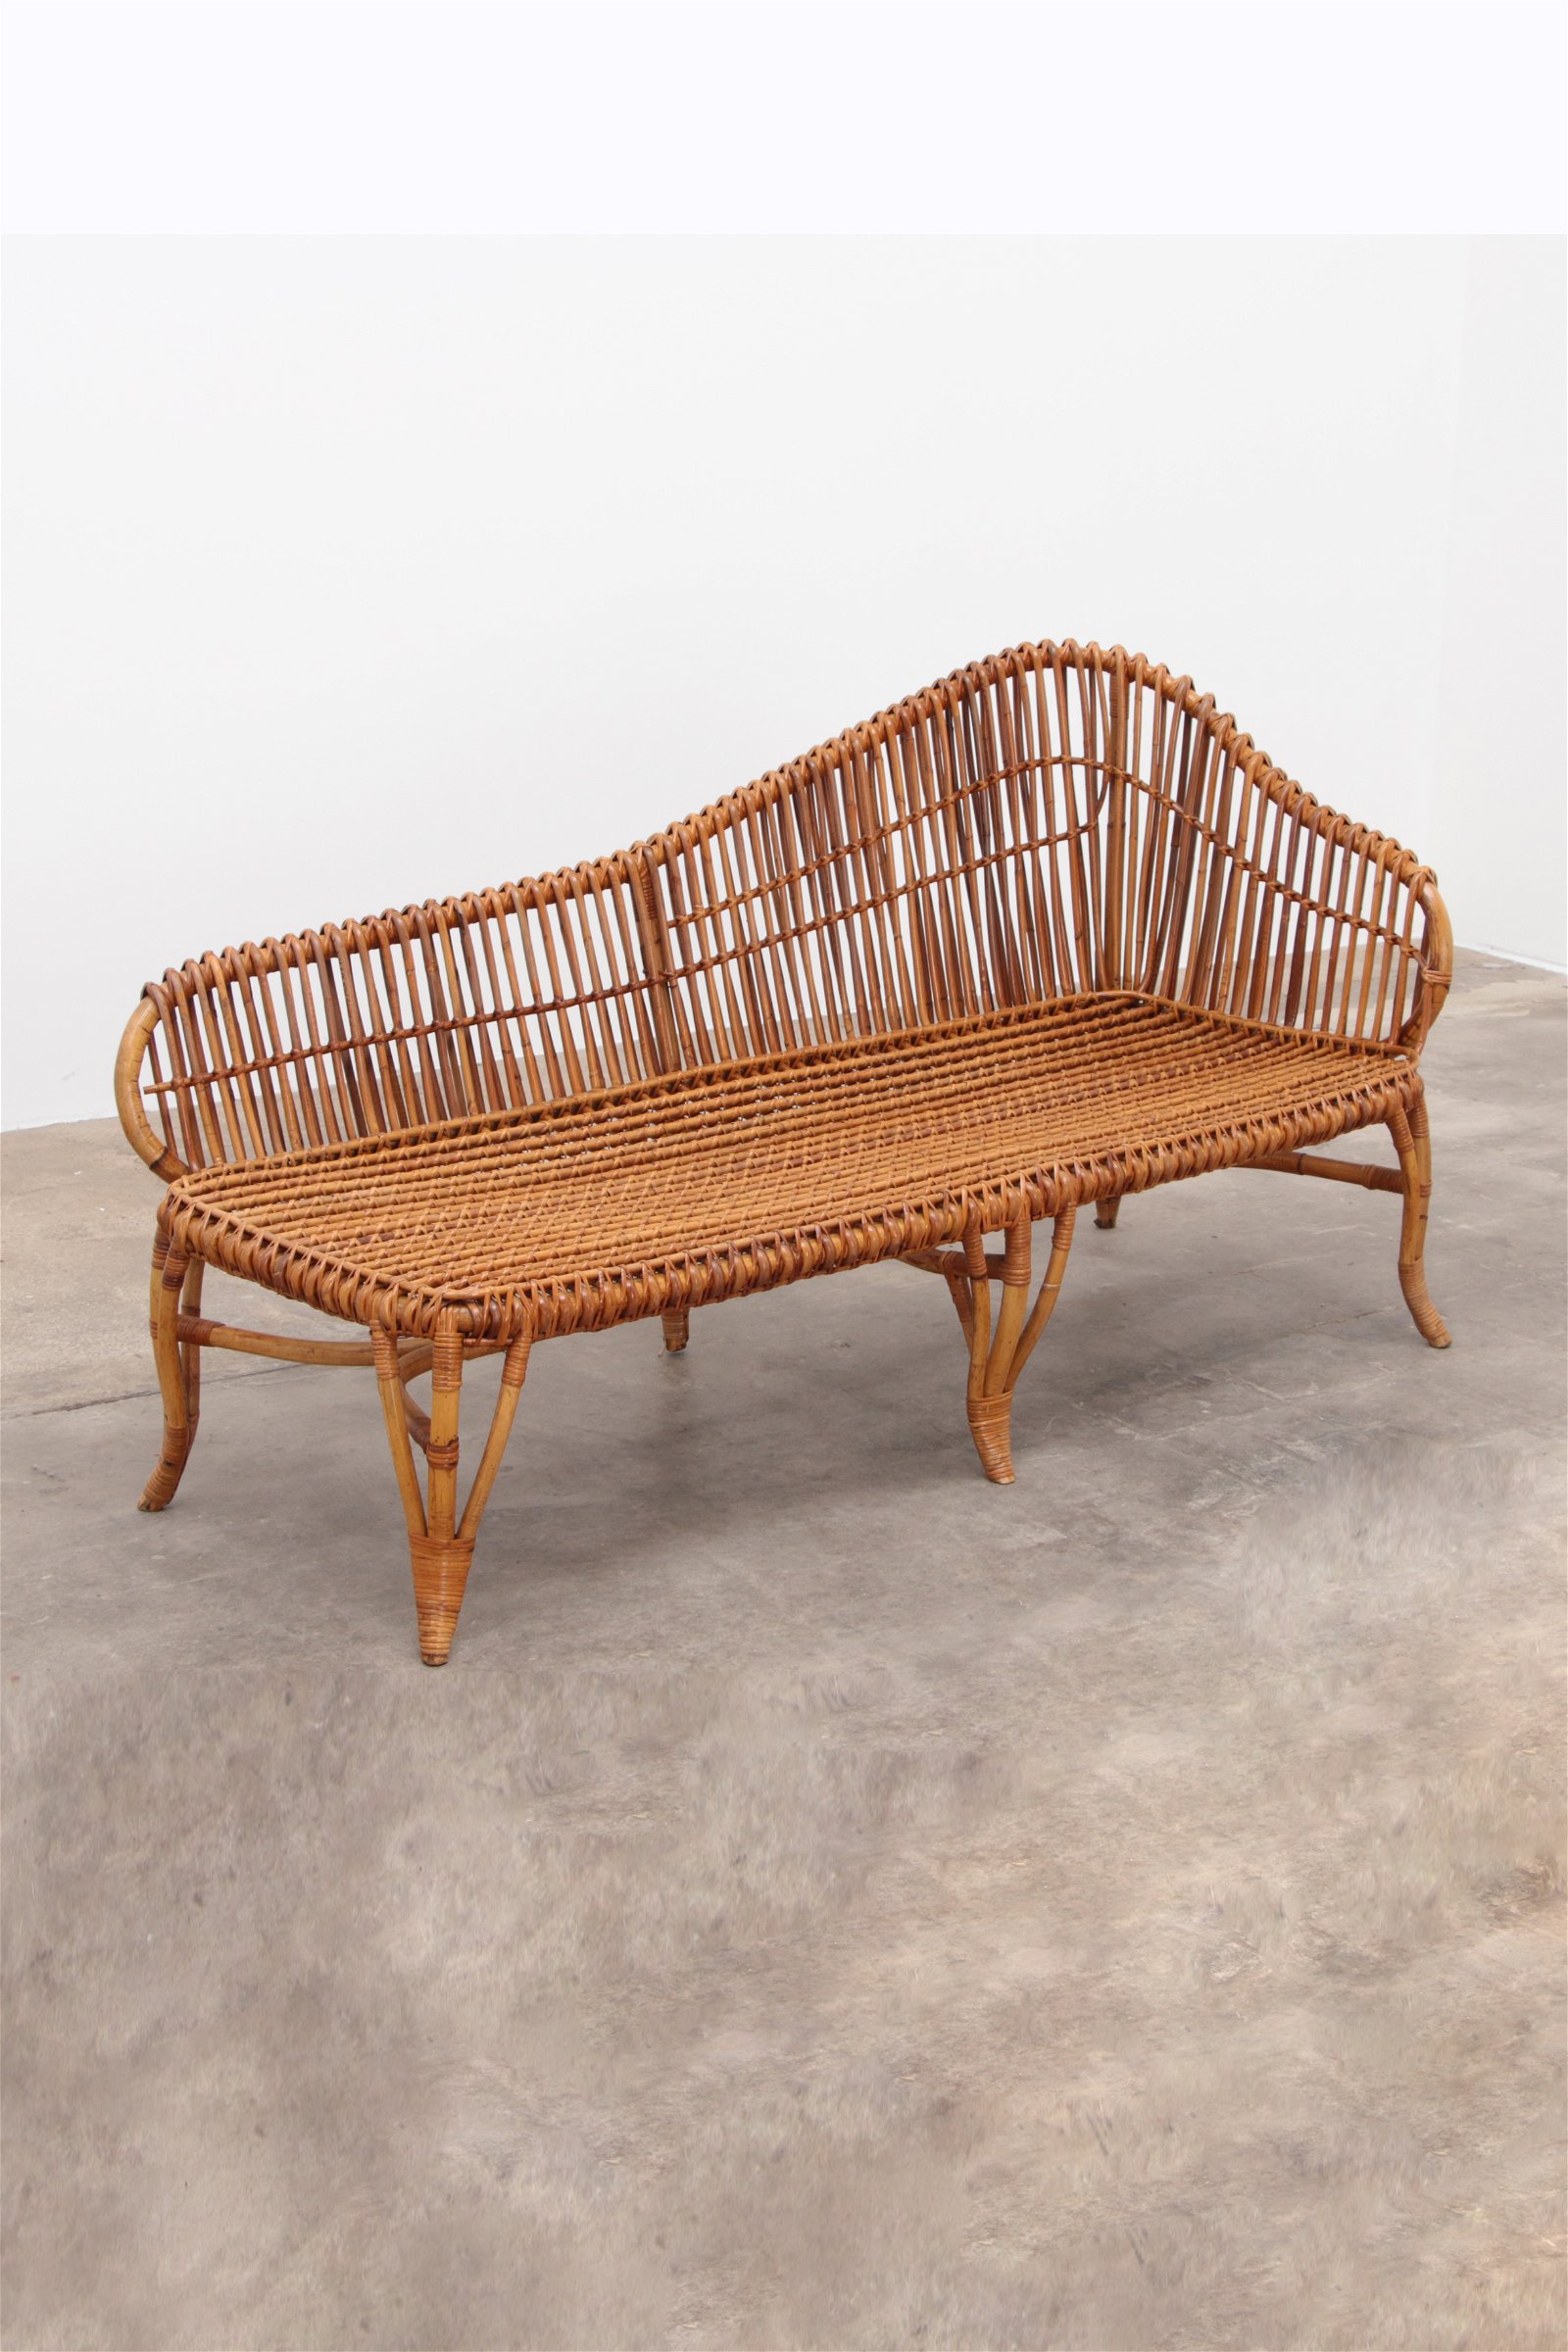 Whoppah Exclusieve chaise longue van bamboe en rotan - Tweedehands